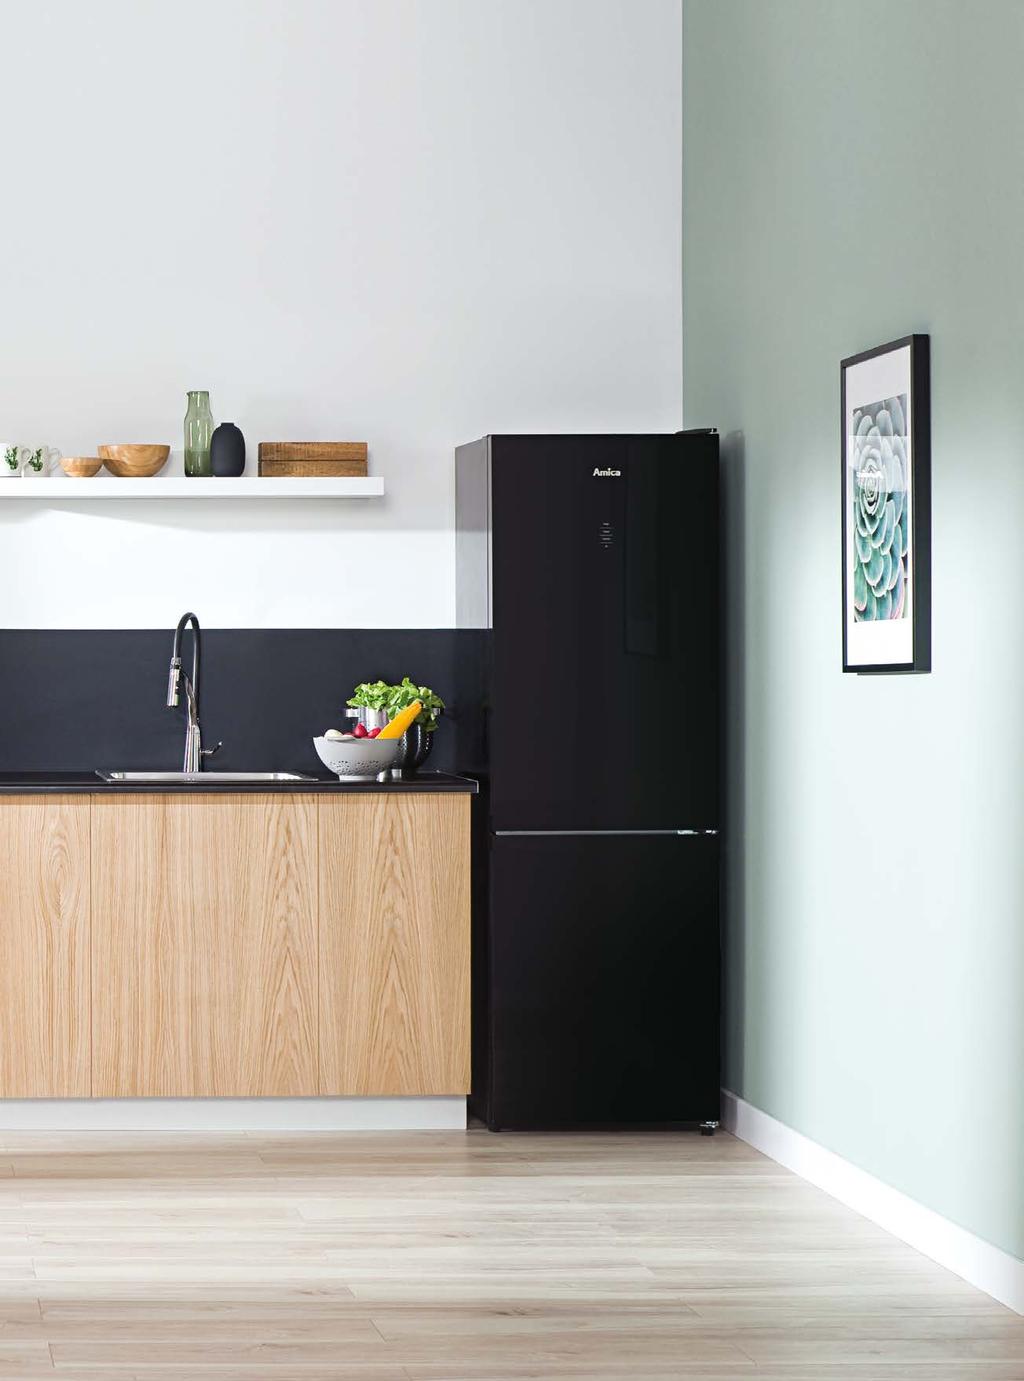 Amica ofrece una amplia gama de frigoríficos en diferentes tamaños y colores. Nuestros aparatos no solo cumplen con su práctica función, sino que también mejoran el diseño de tu cocina.